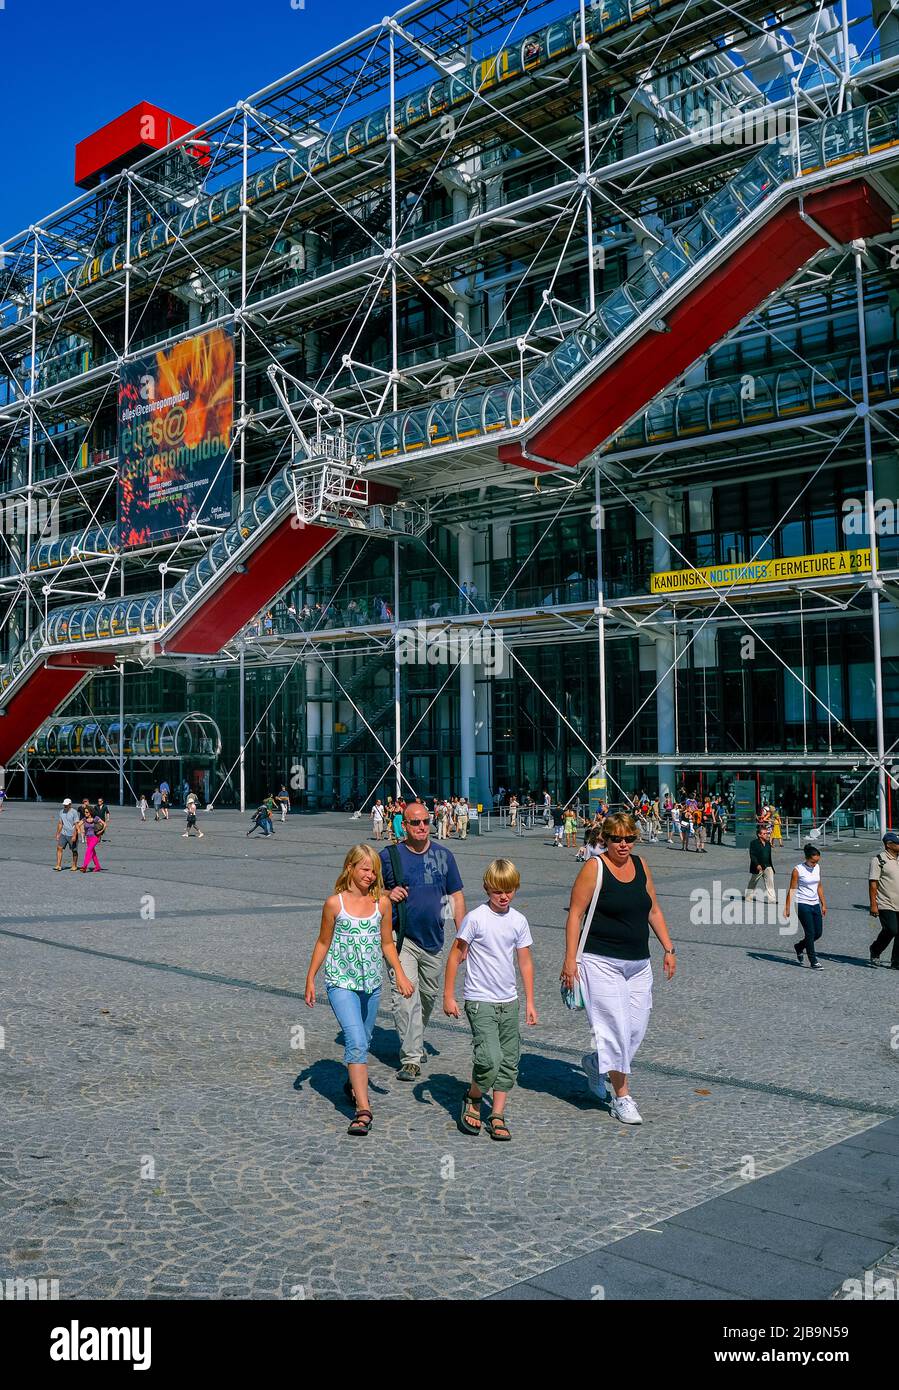 Paris, France - famille touristique à pied devant le musée George Pompidou, sur Front Plaza, le centre pompidou Banque D'Images